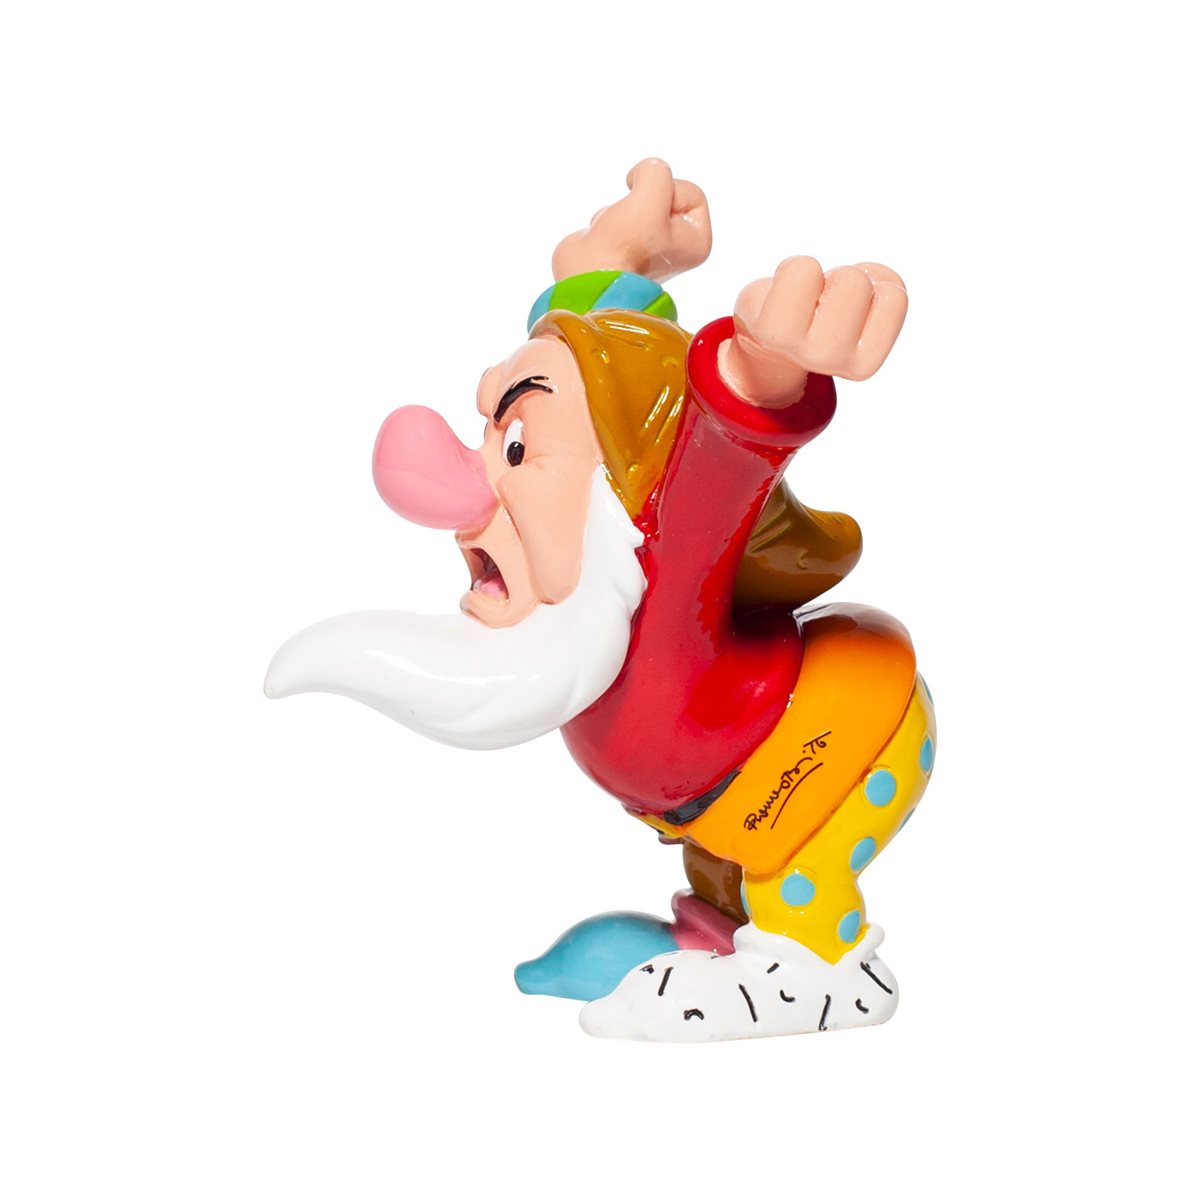 Doc Disney Britto Snow White and the Seven Dwarfs Mini Figurine *NEW* 